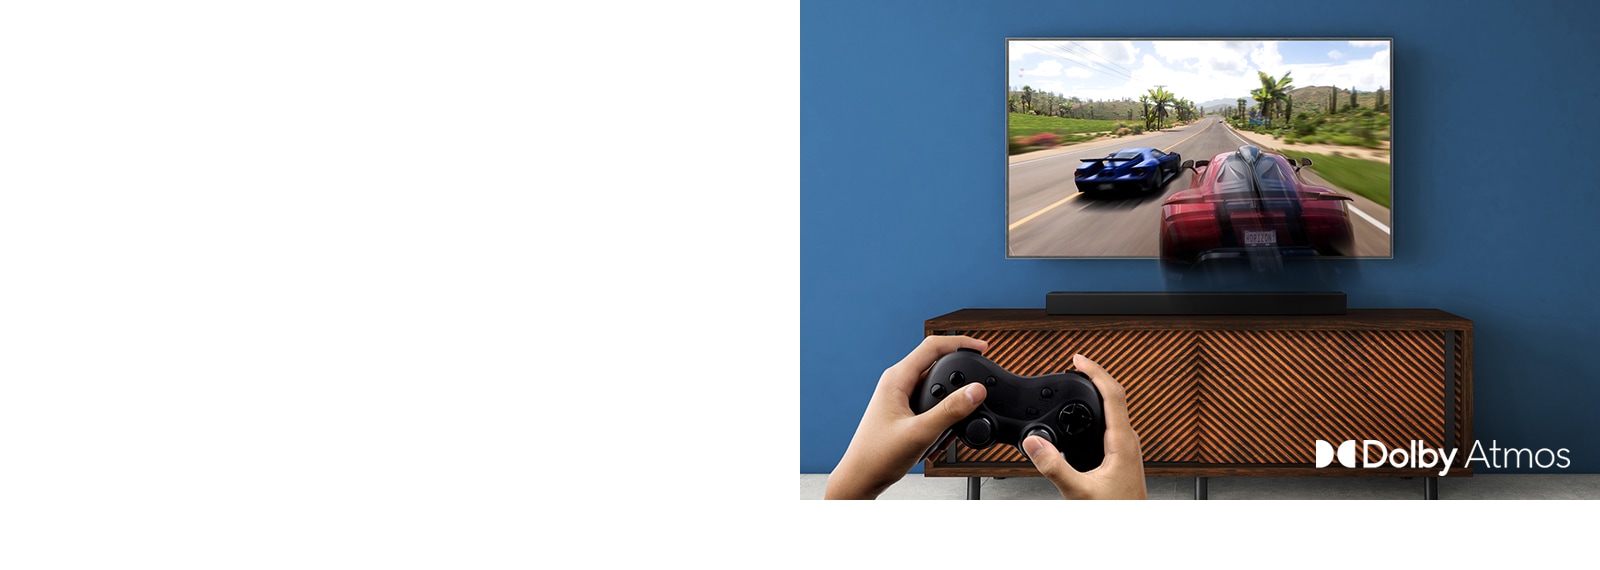 LG-TV-en henger på veggen og viser et racerspill. LG-lydplanken er plassert på den brune hylla rett nedenfor LG-TV-en. En mann holder en spillkontroll.